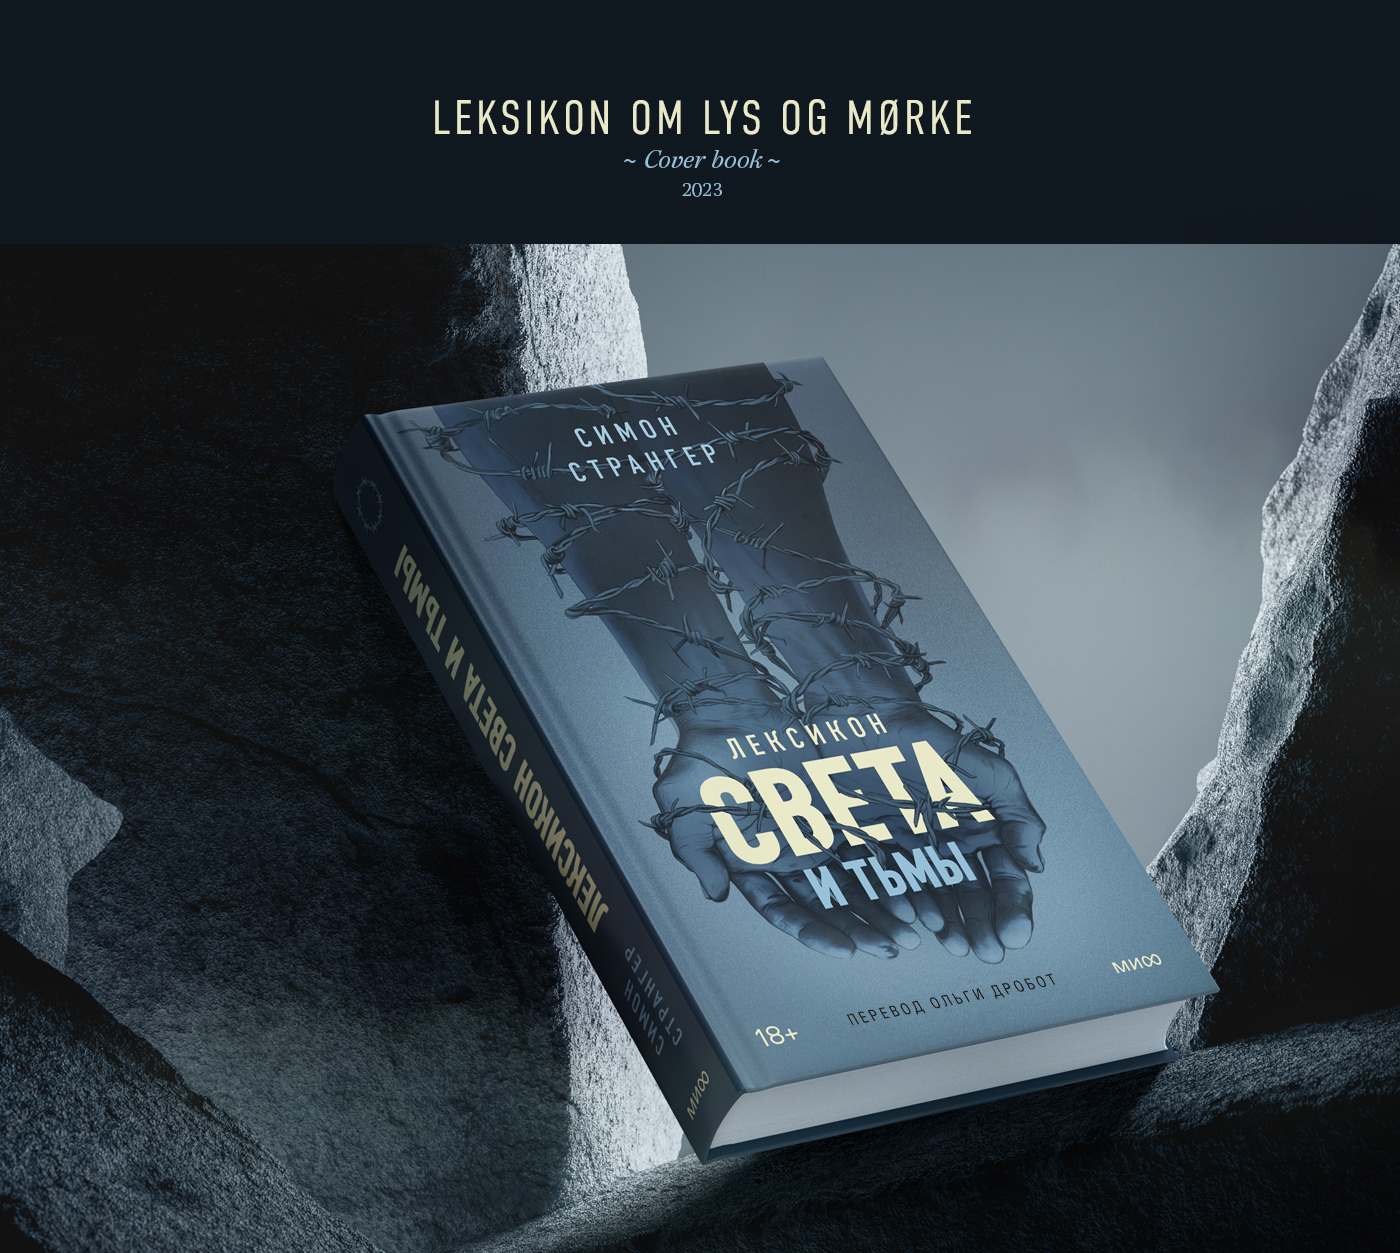 Cover book "Leksikon om lys og mørke"
